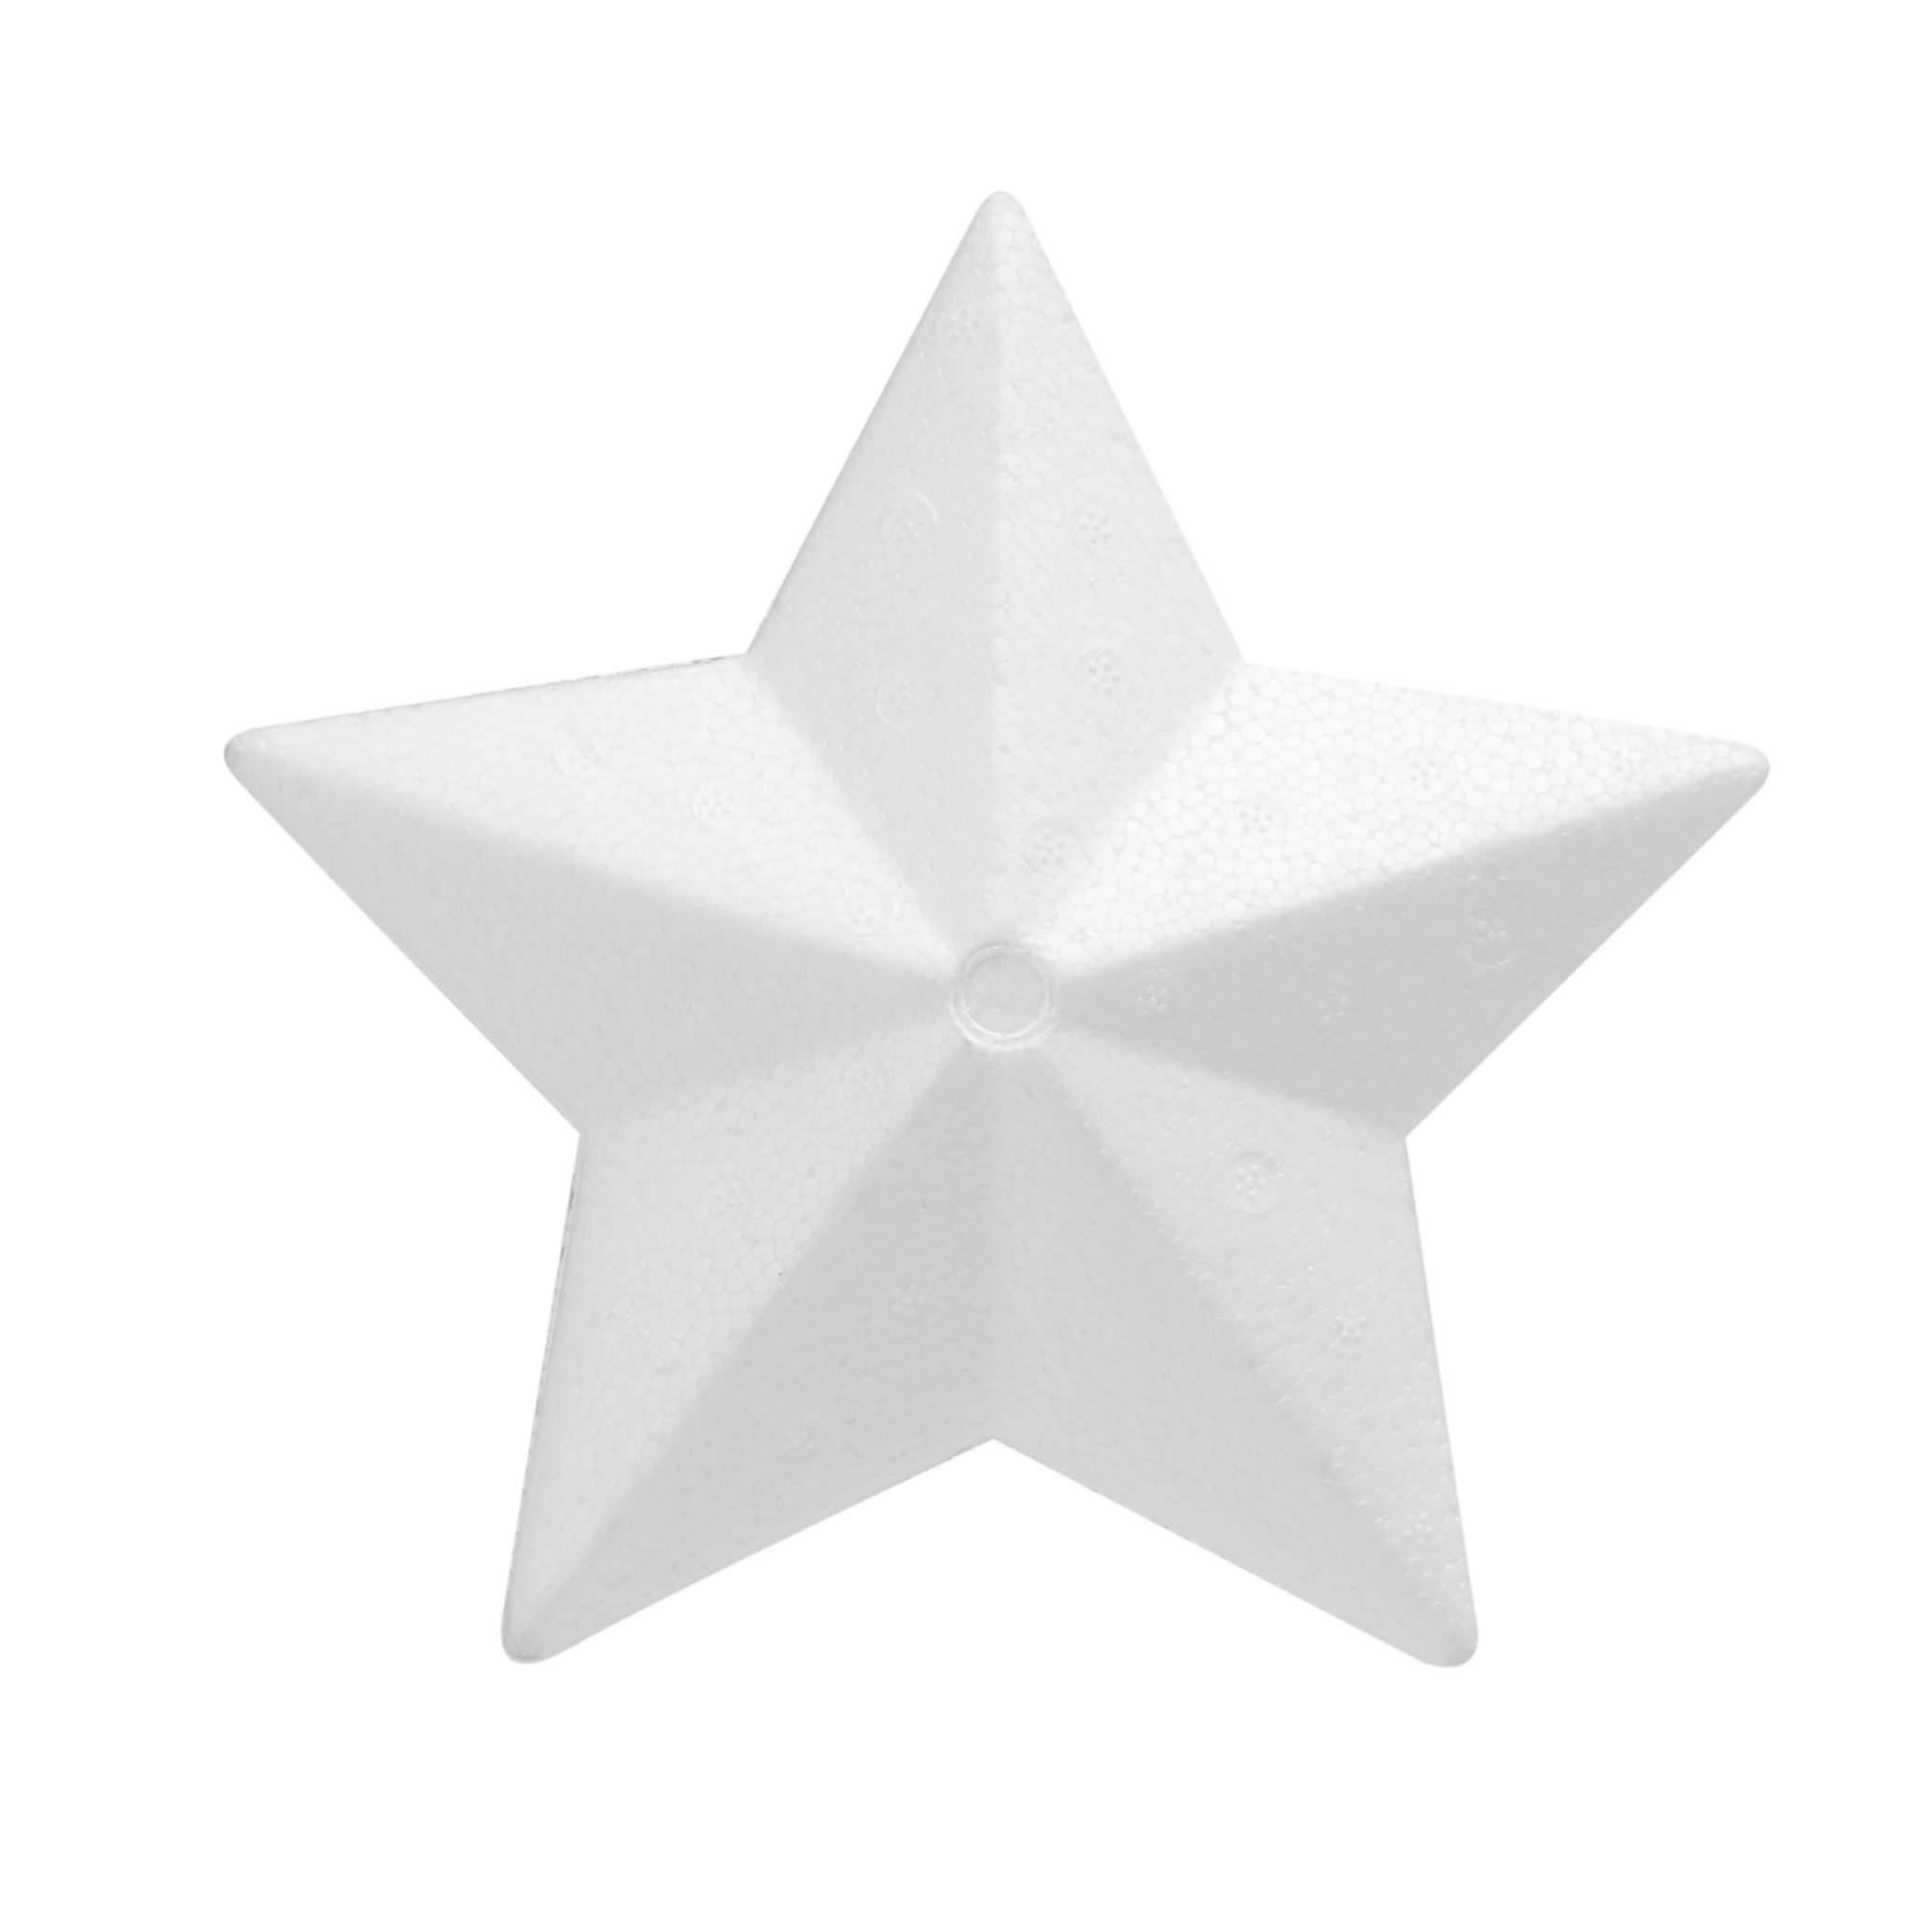 Piepschuim hobby knutselen vormen-figuren ster van 15 cm